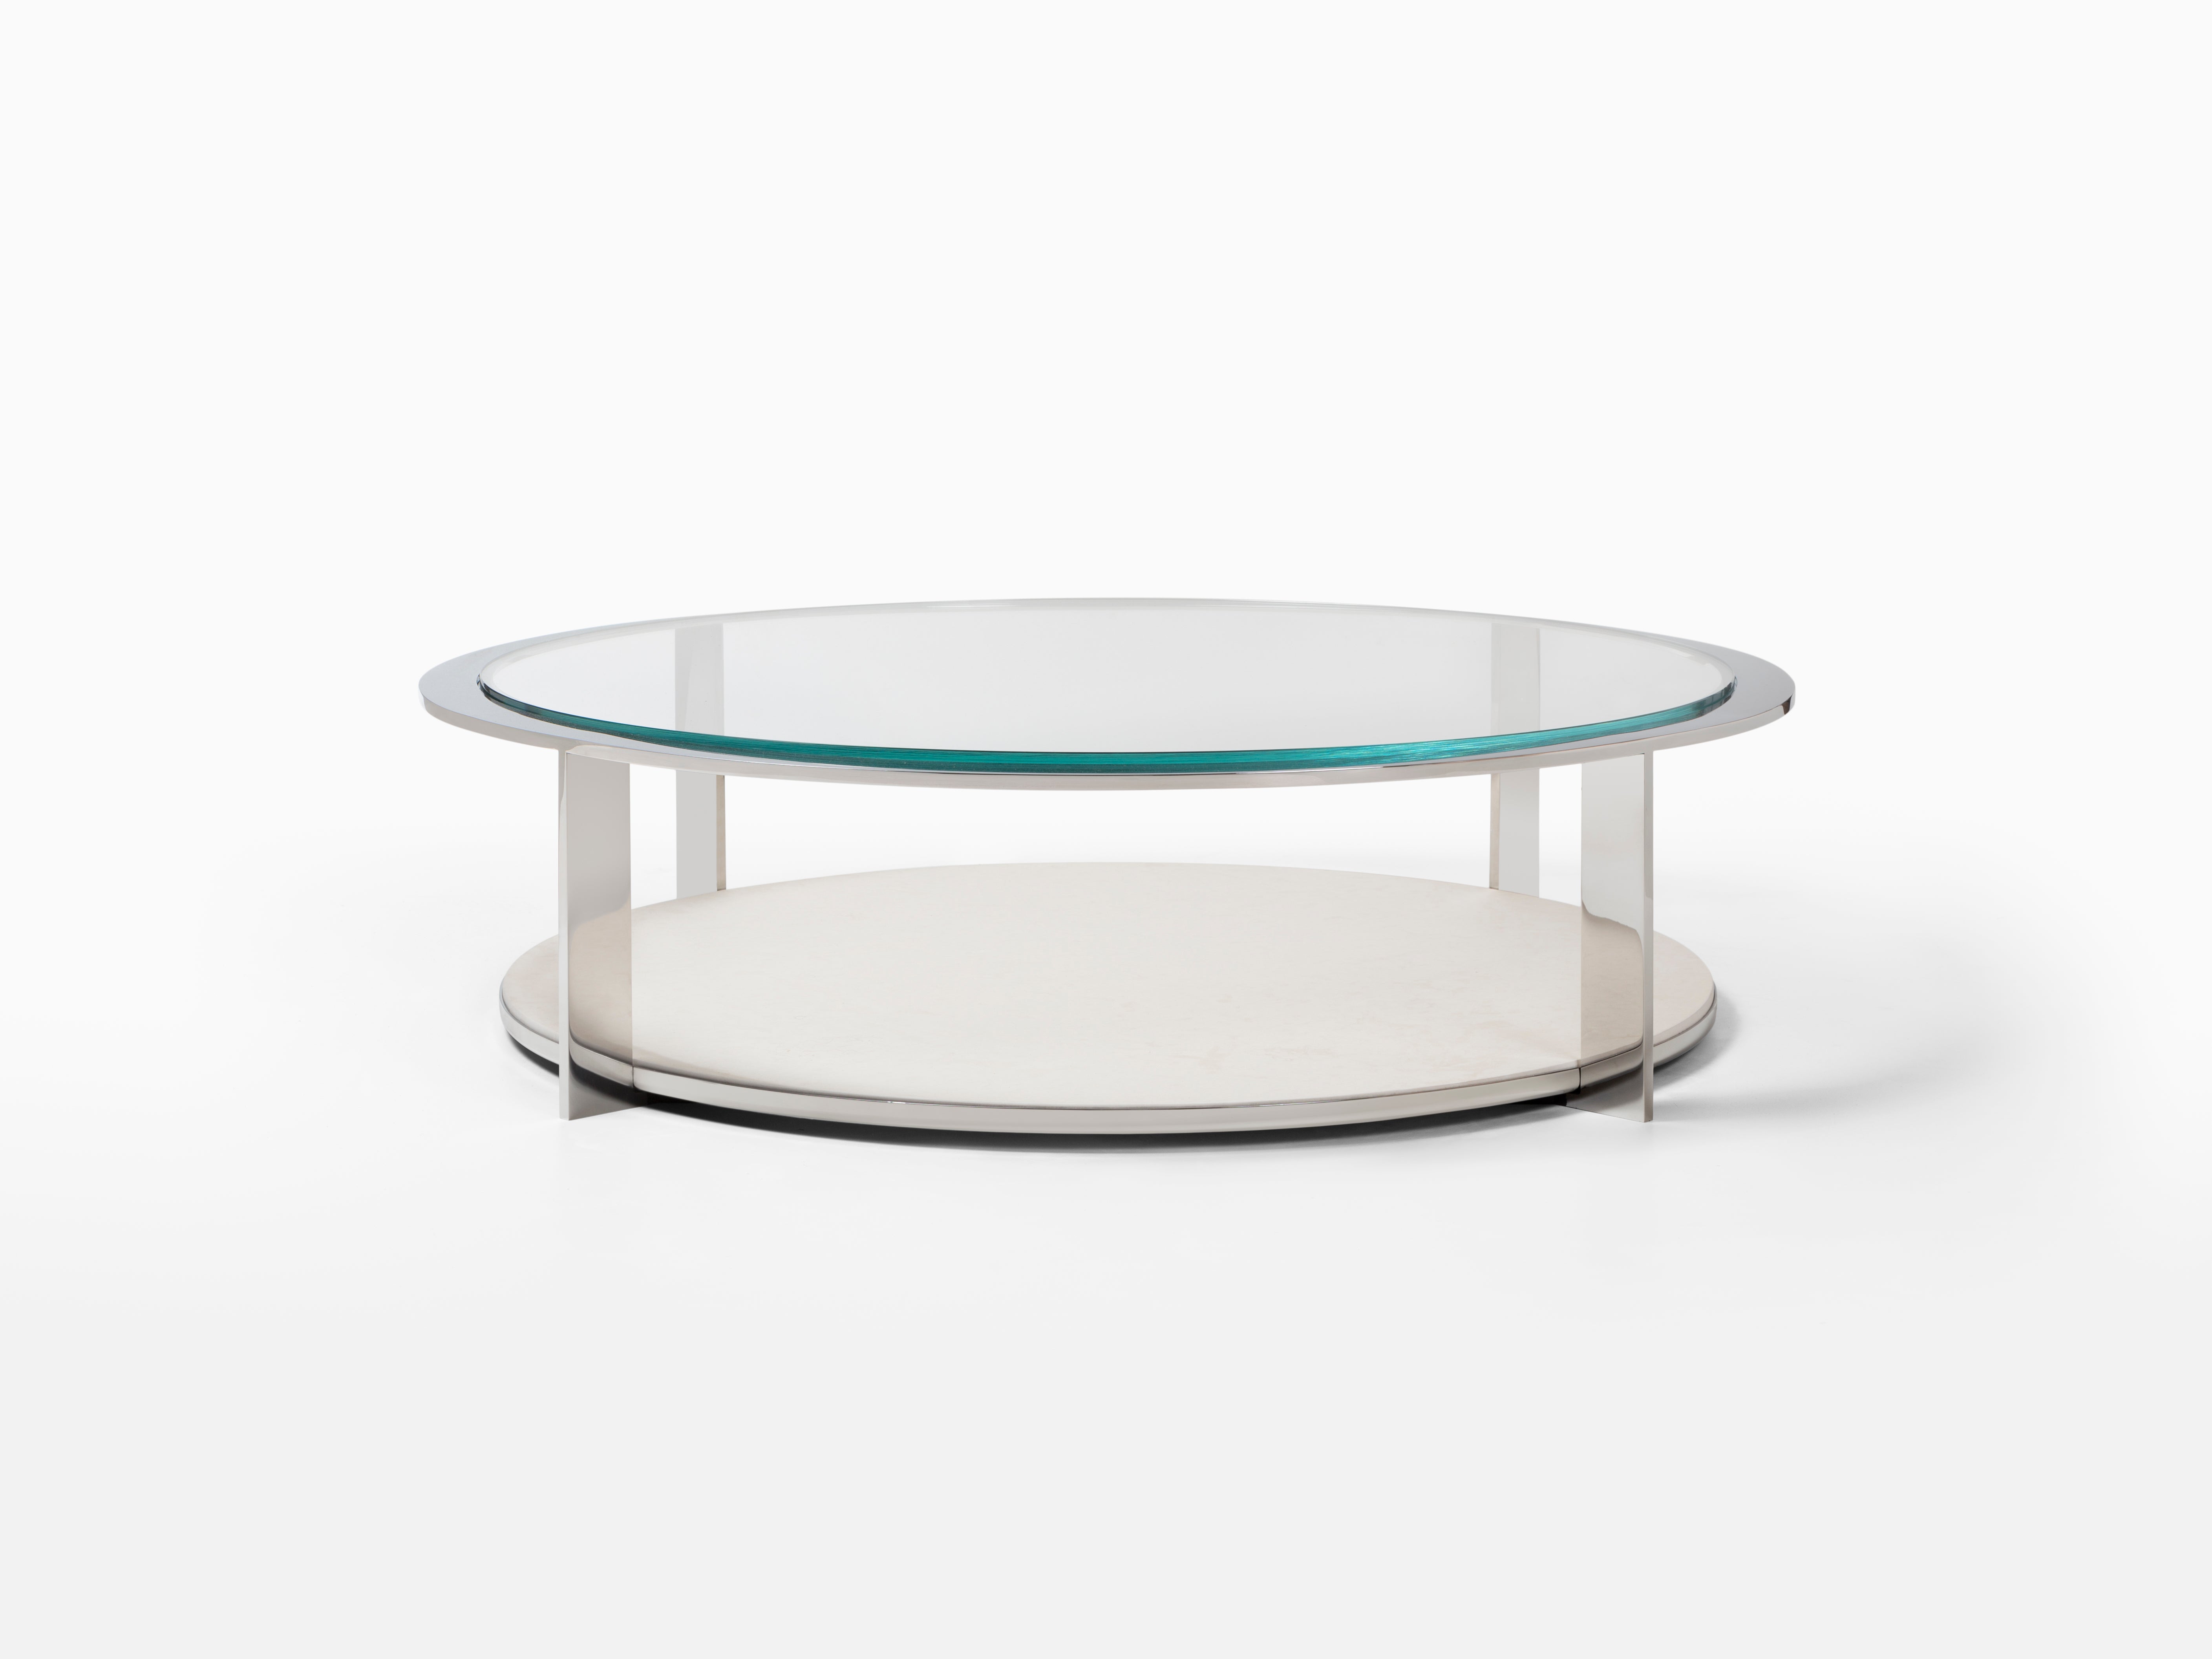 Les matériaux en métal, pierre et verre sont élégamment mis en valeur dans la table cocktail Ion. La forme ronde et les matériaux audacieux constituent le point focal idéal pour mettre en valeur tout style de pièce, tout en offrant un espace